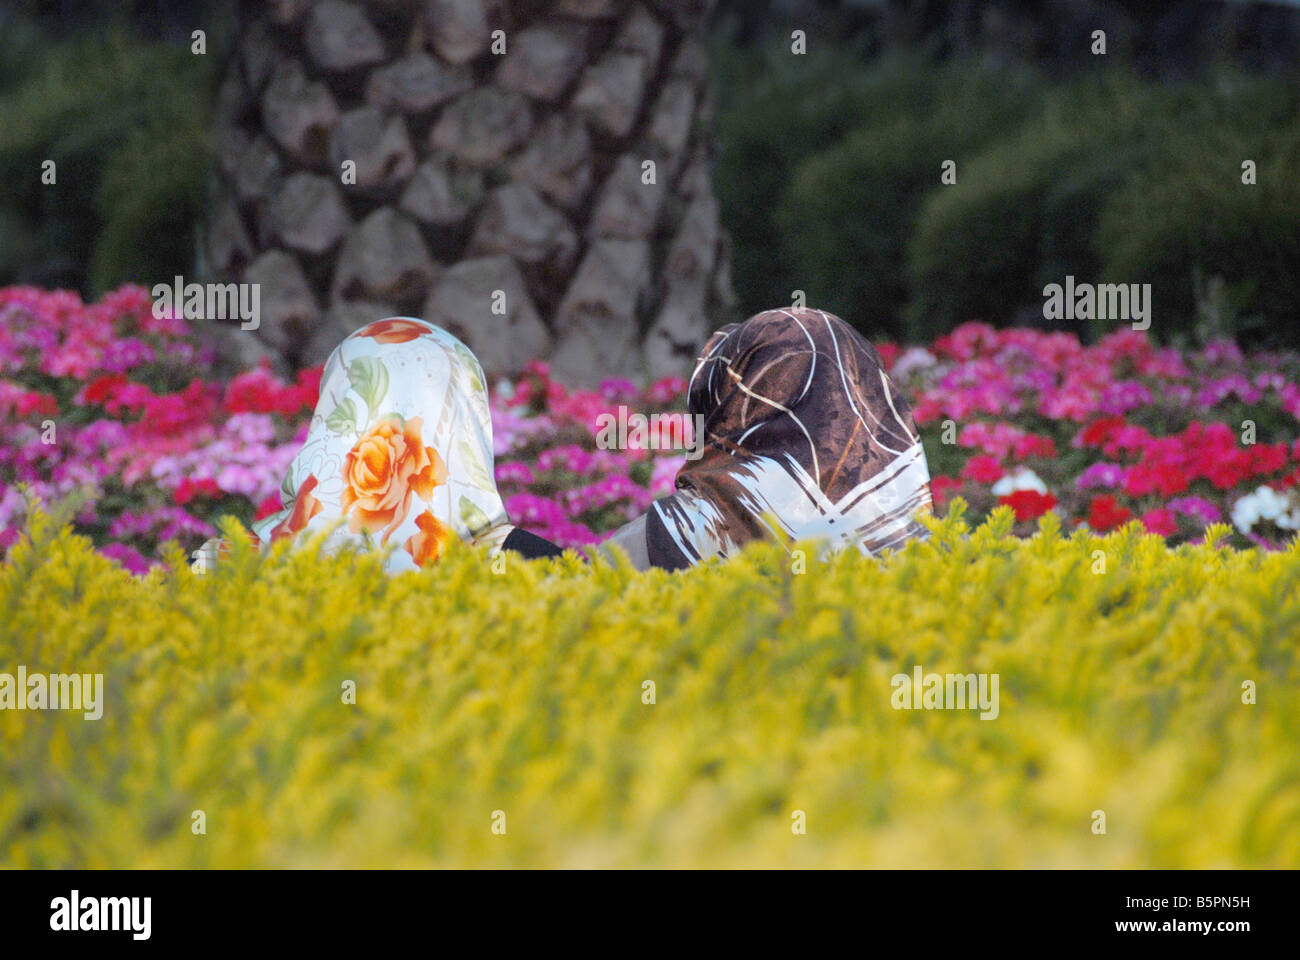 two women wearing headscarvess in a garden Stock Photo